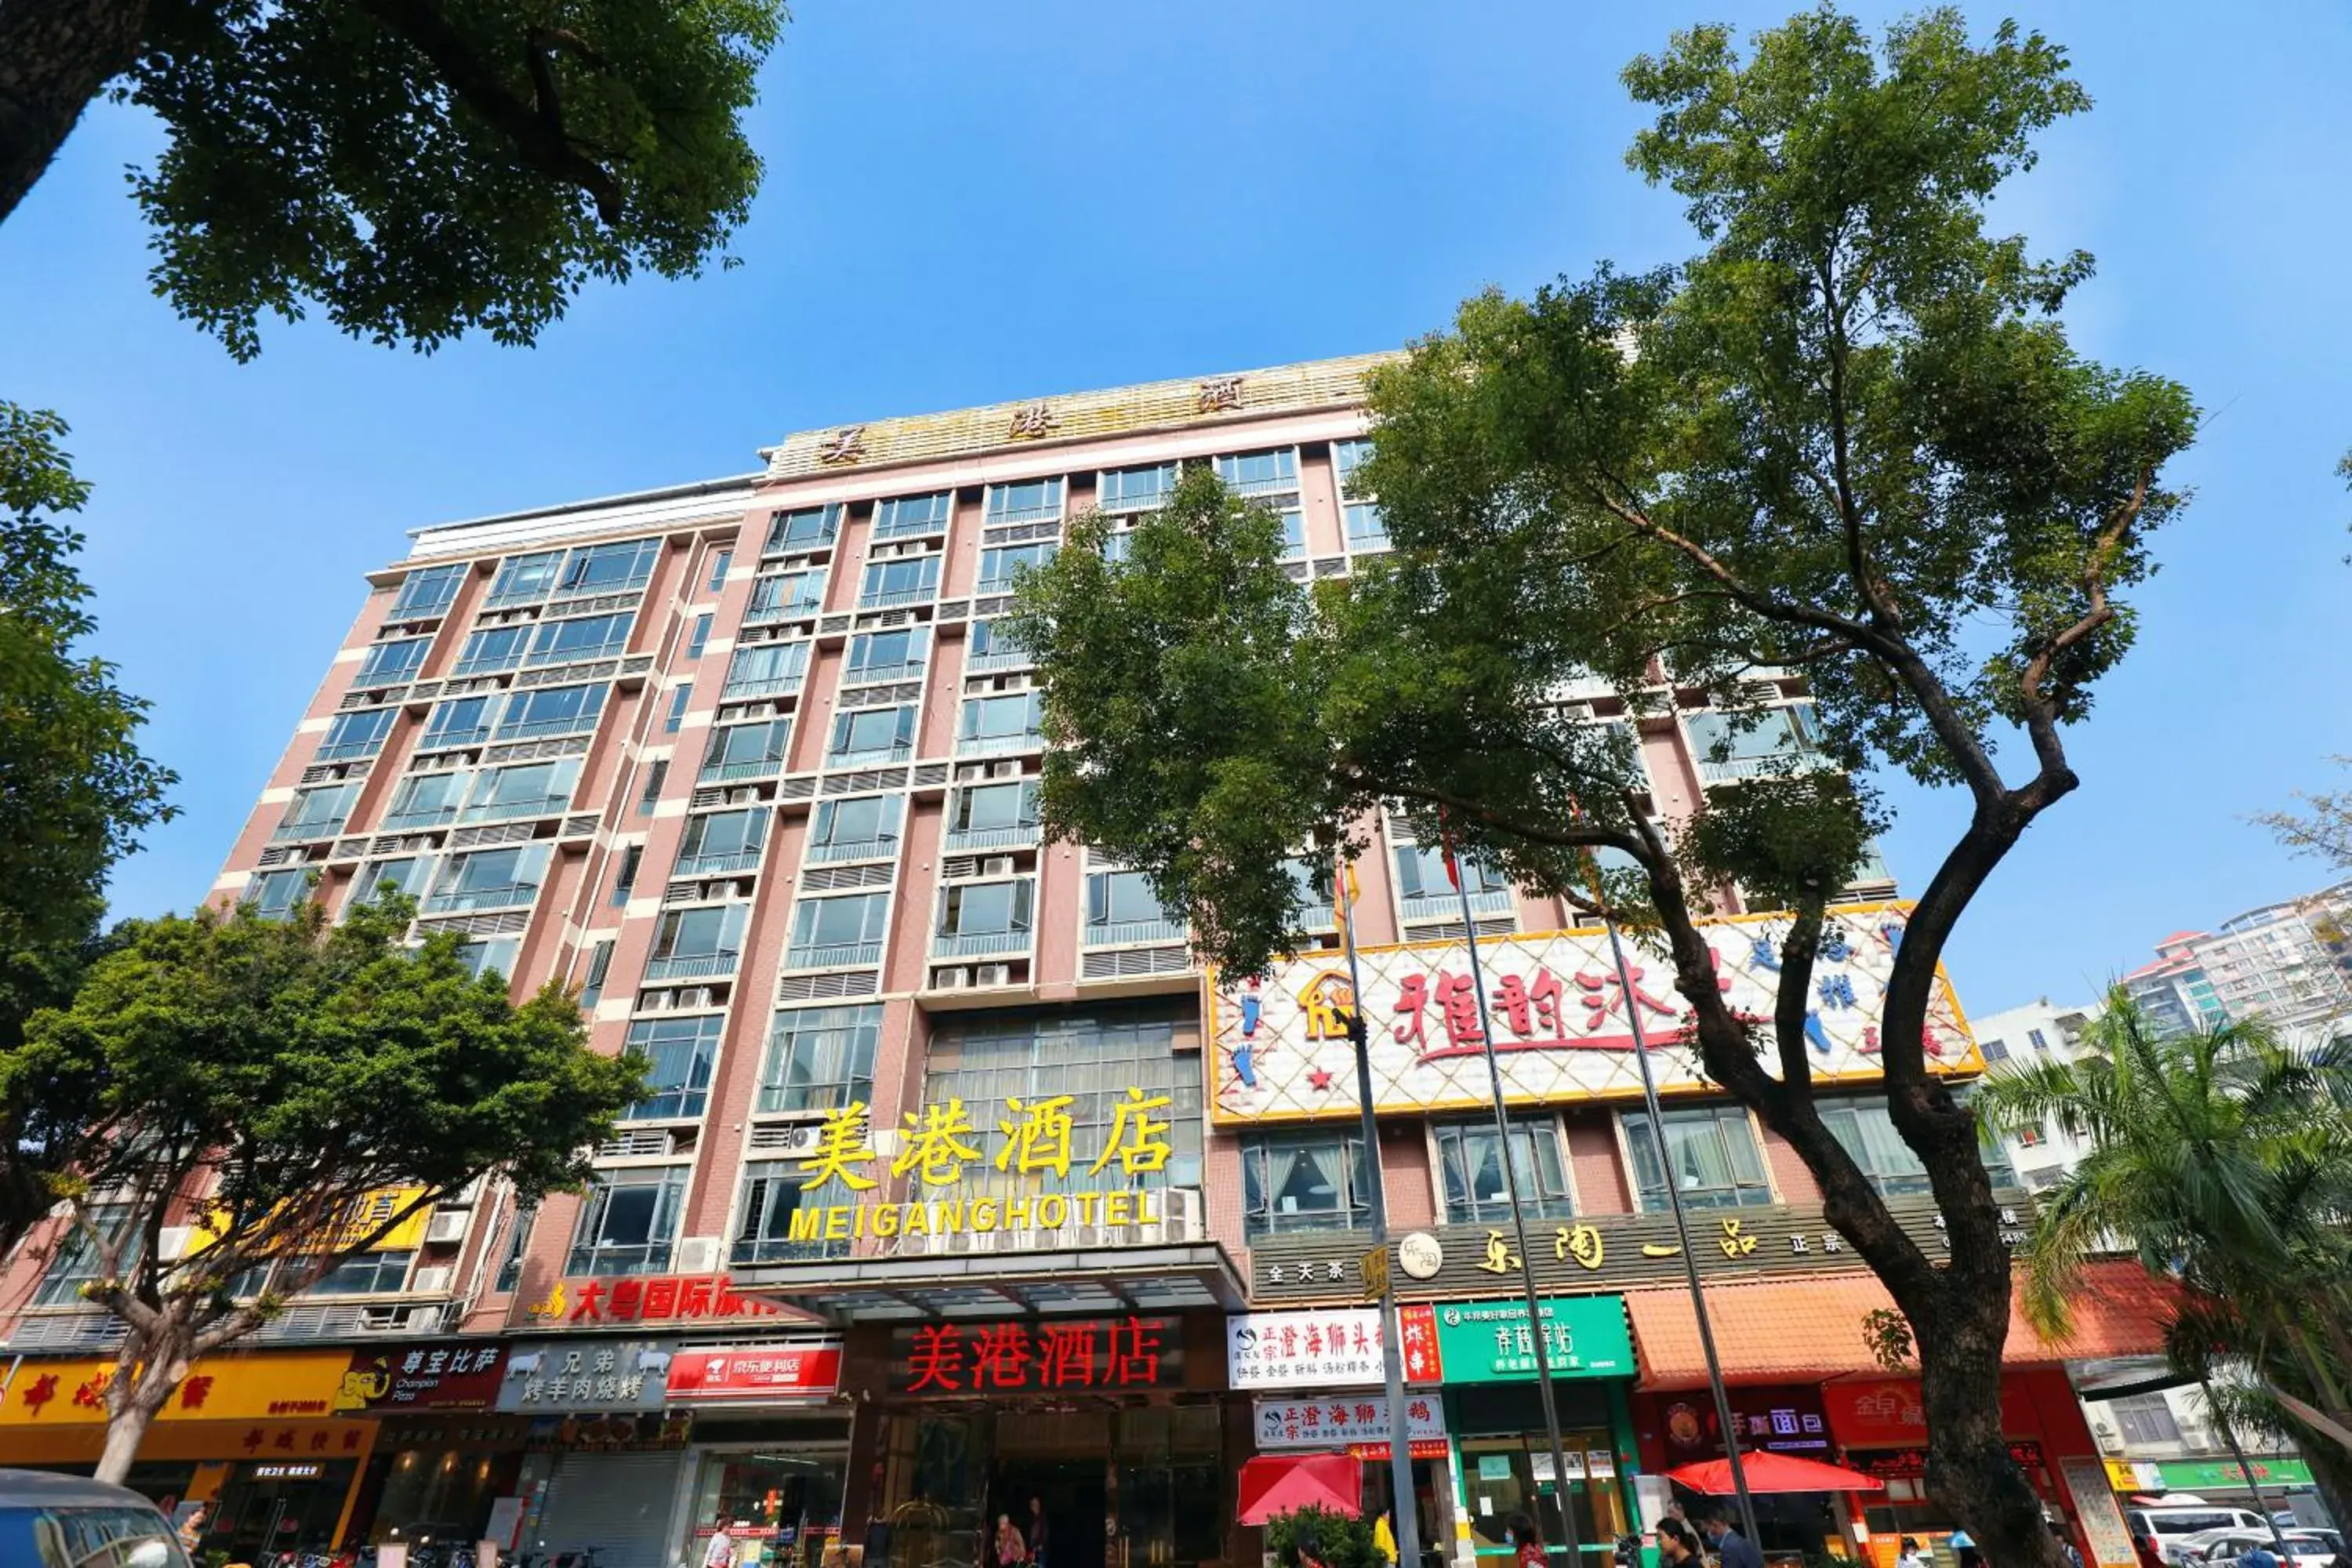 Property Building in Guangzhou Meigang Hotel